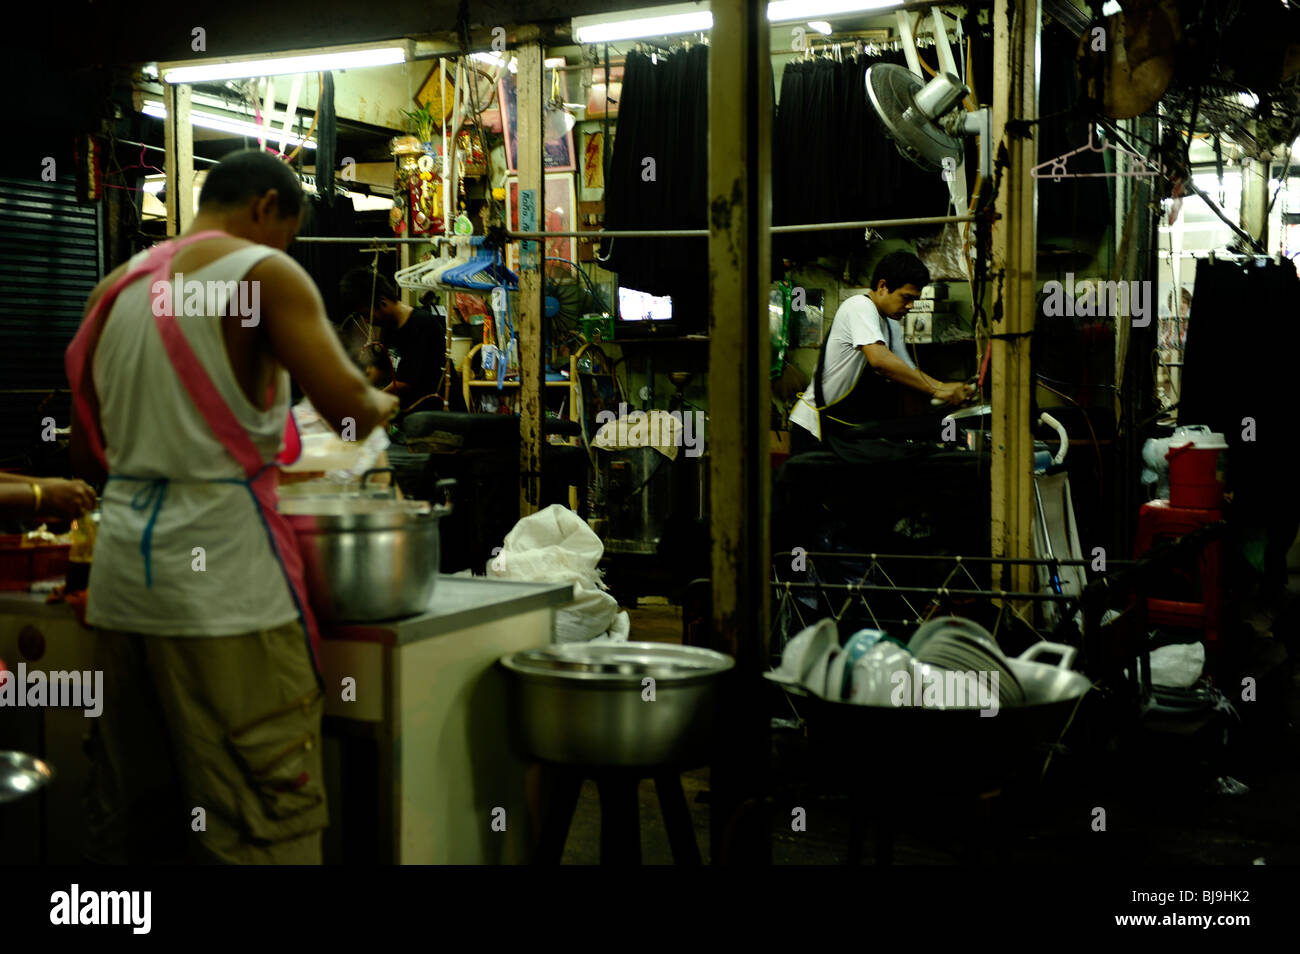 Scène split de chef et adapter au marché pratunam , ratchathew, Bangkok , Thaïlande Banque D'Images